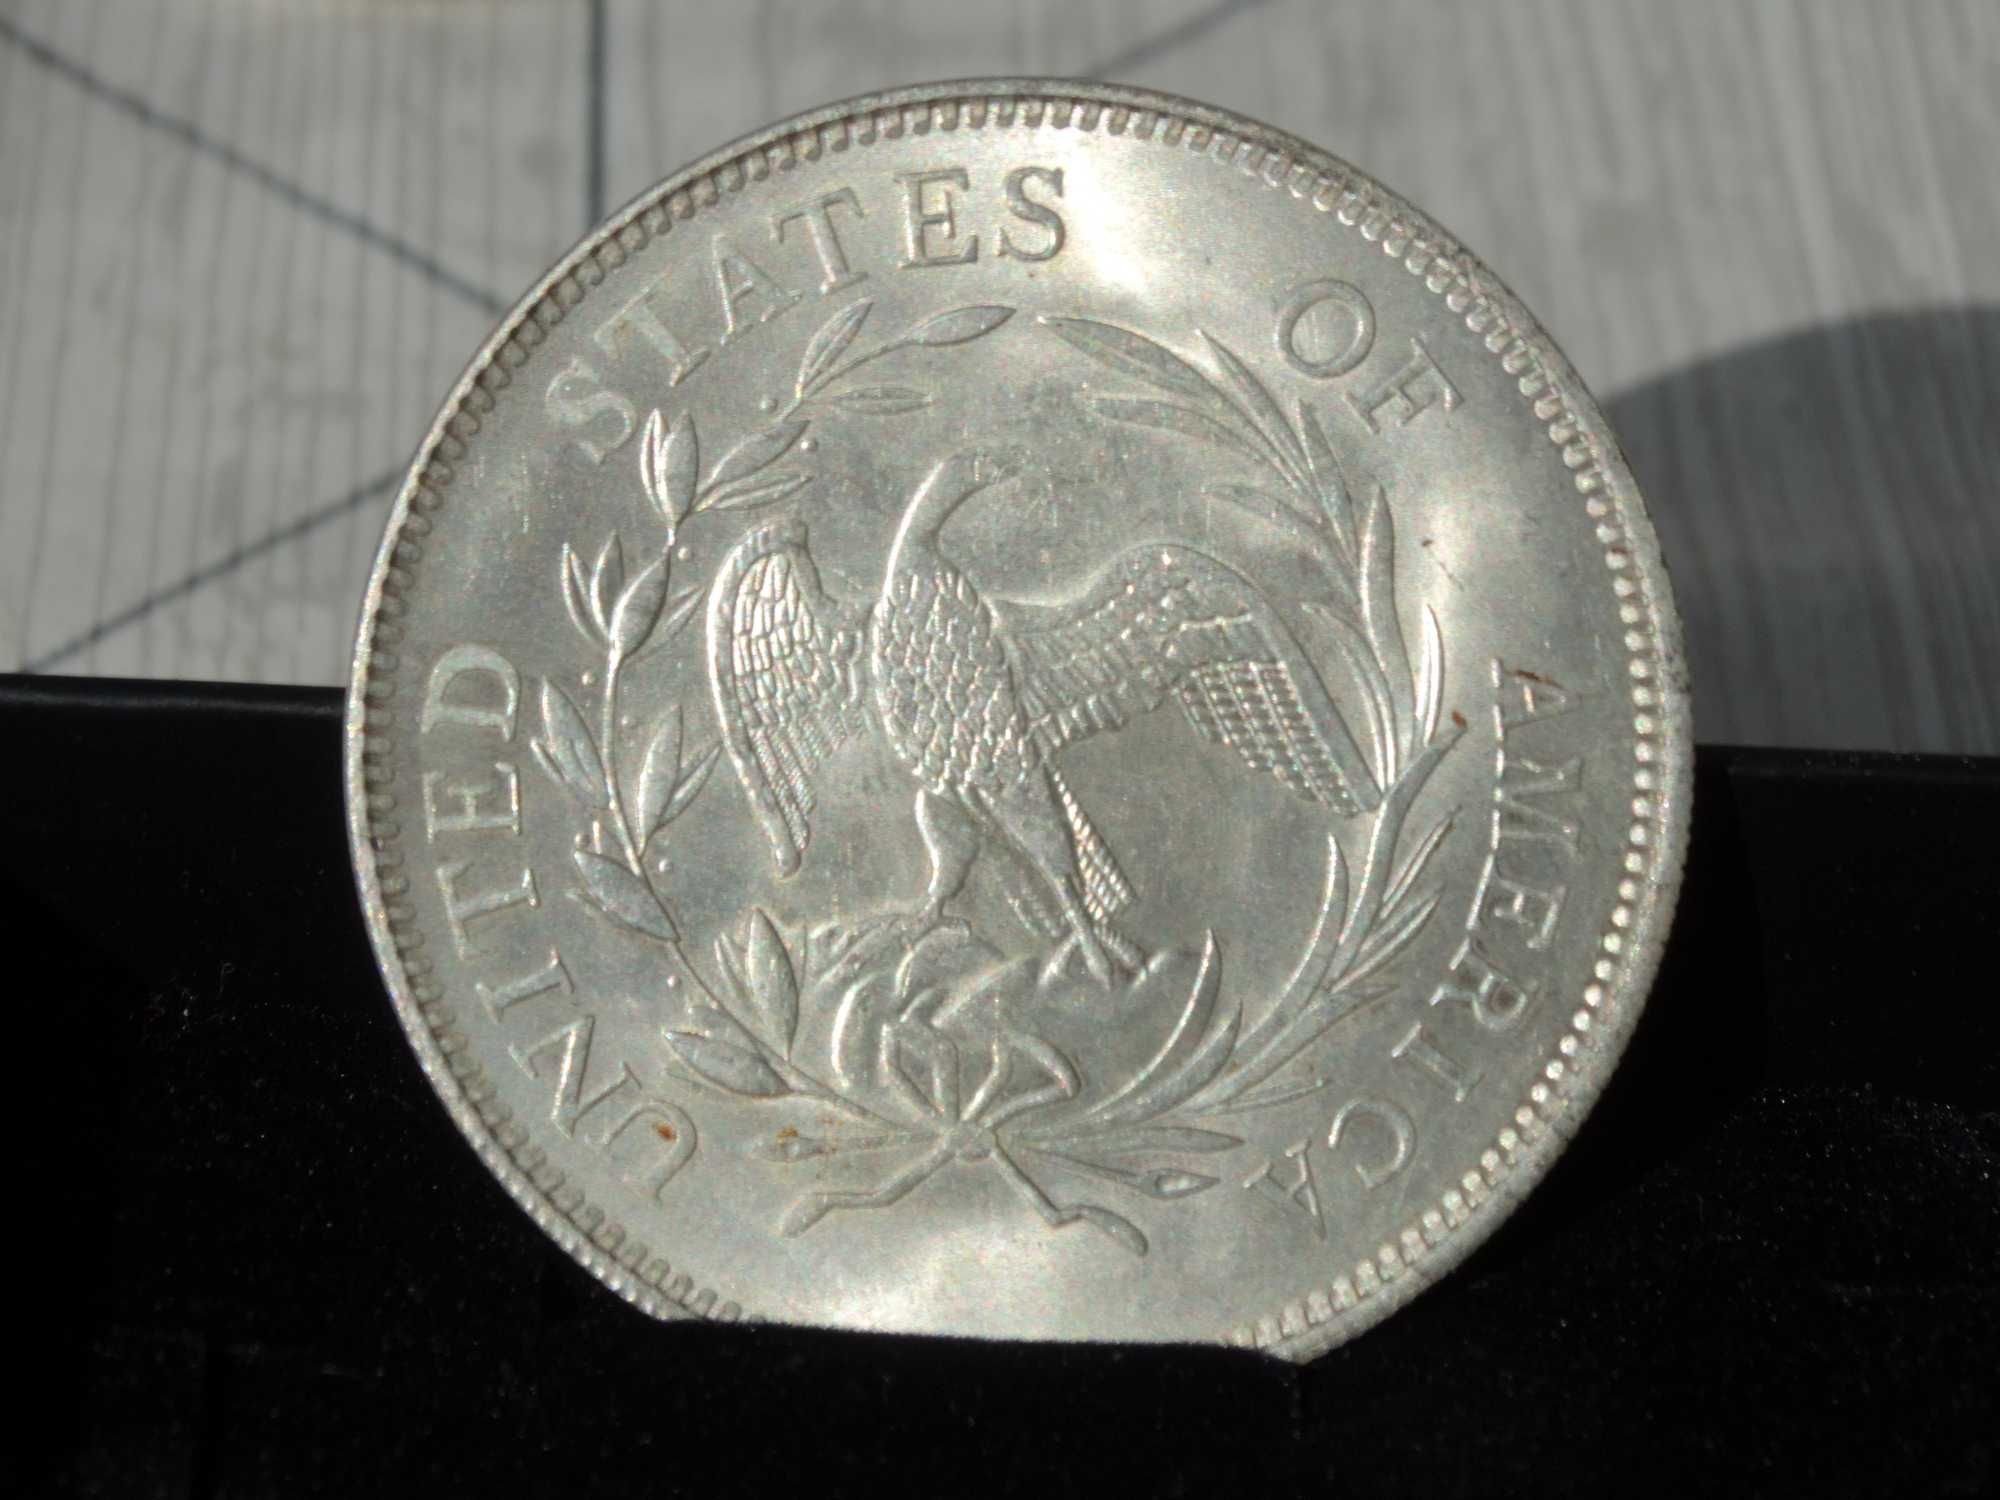 Седем монети от 1 долар, лична колекция